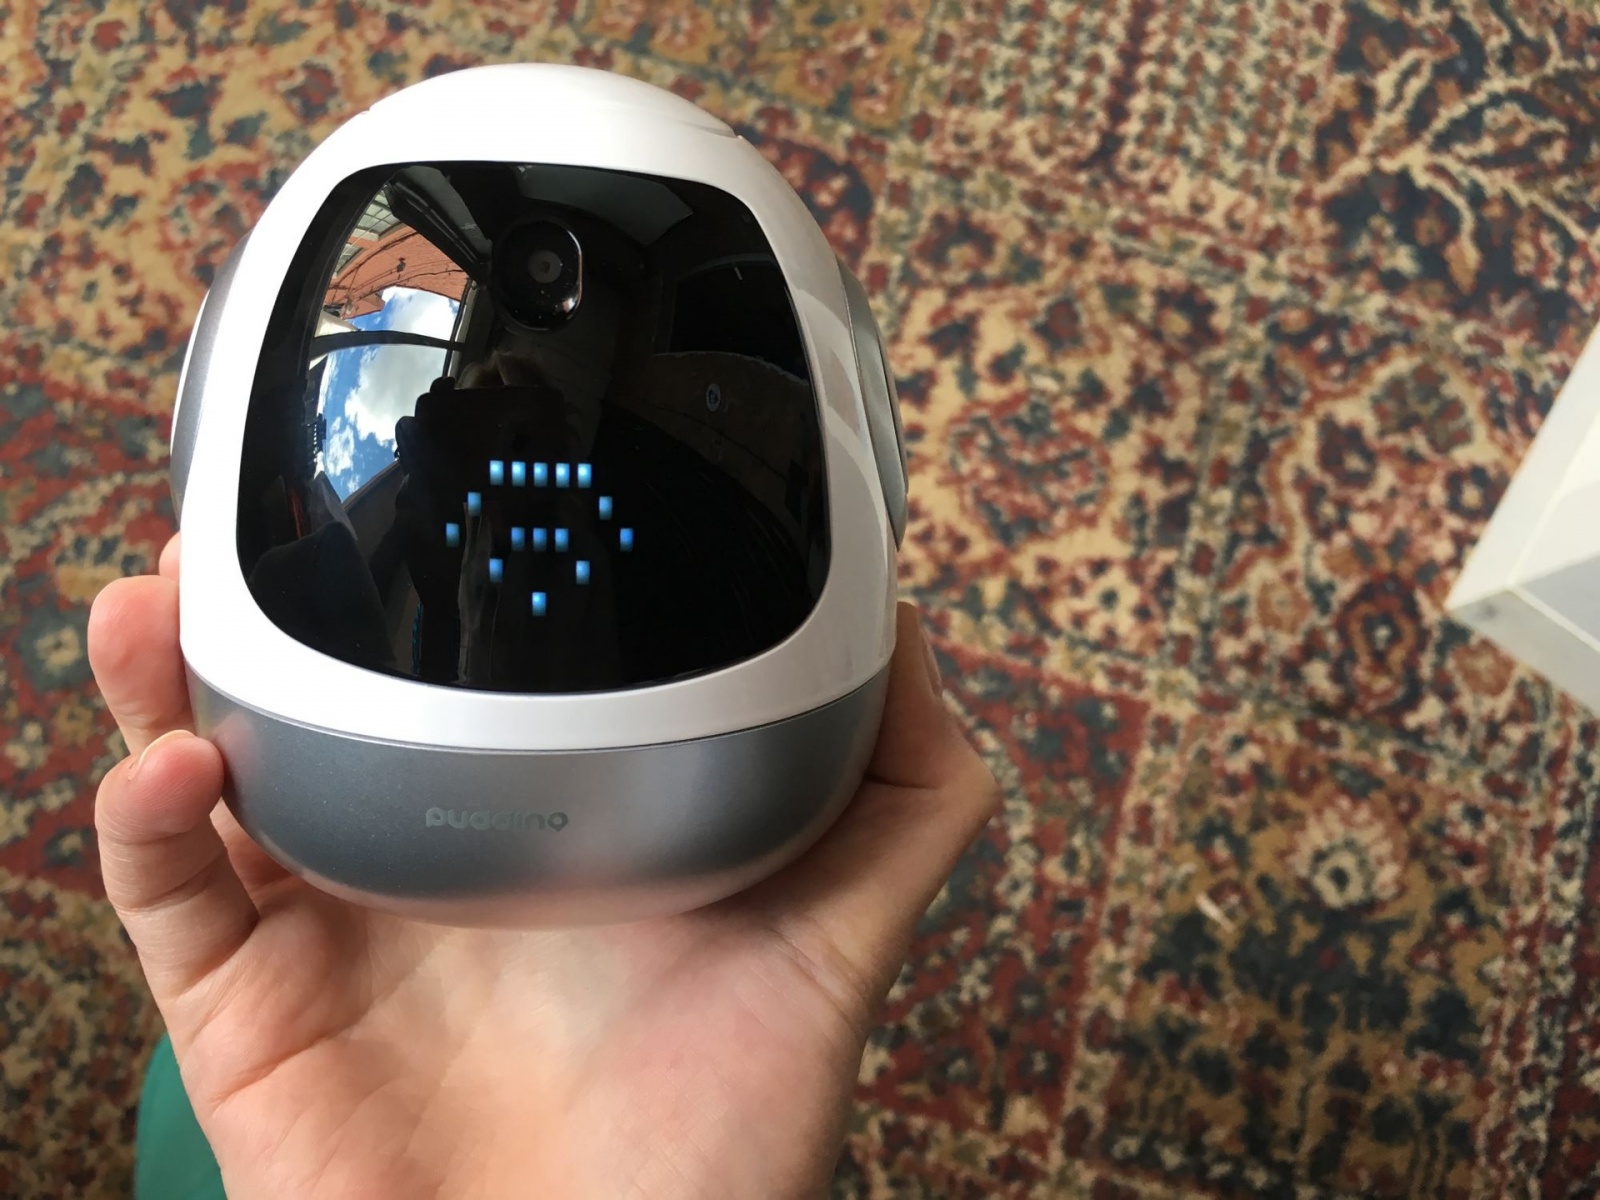 Робот Pudding S — почти универсальный цифровой помощник для ребенка - 4